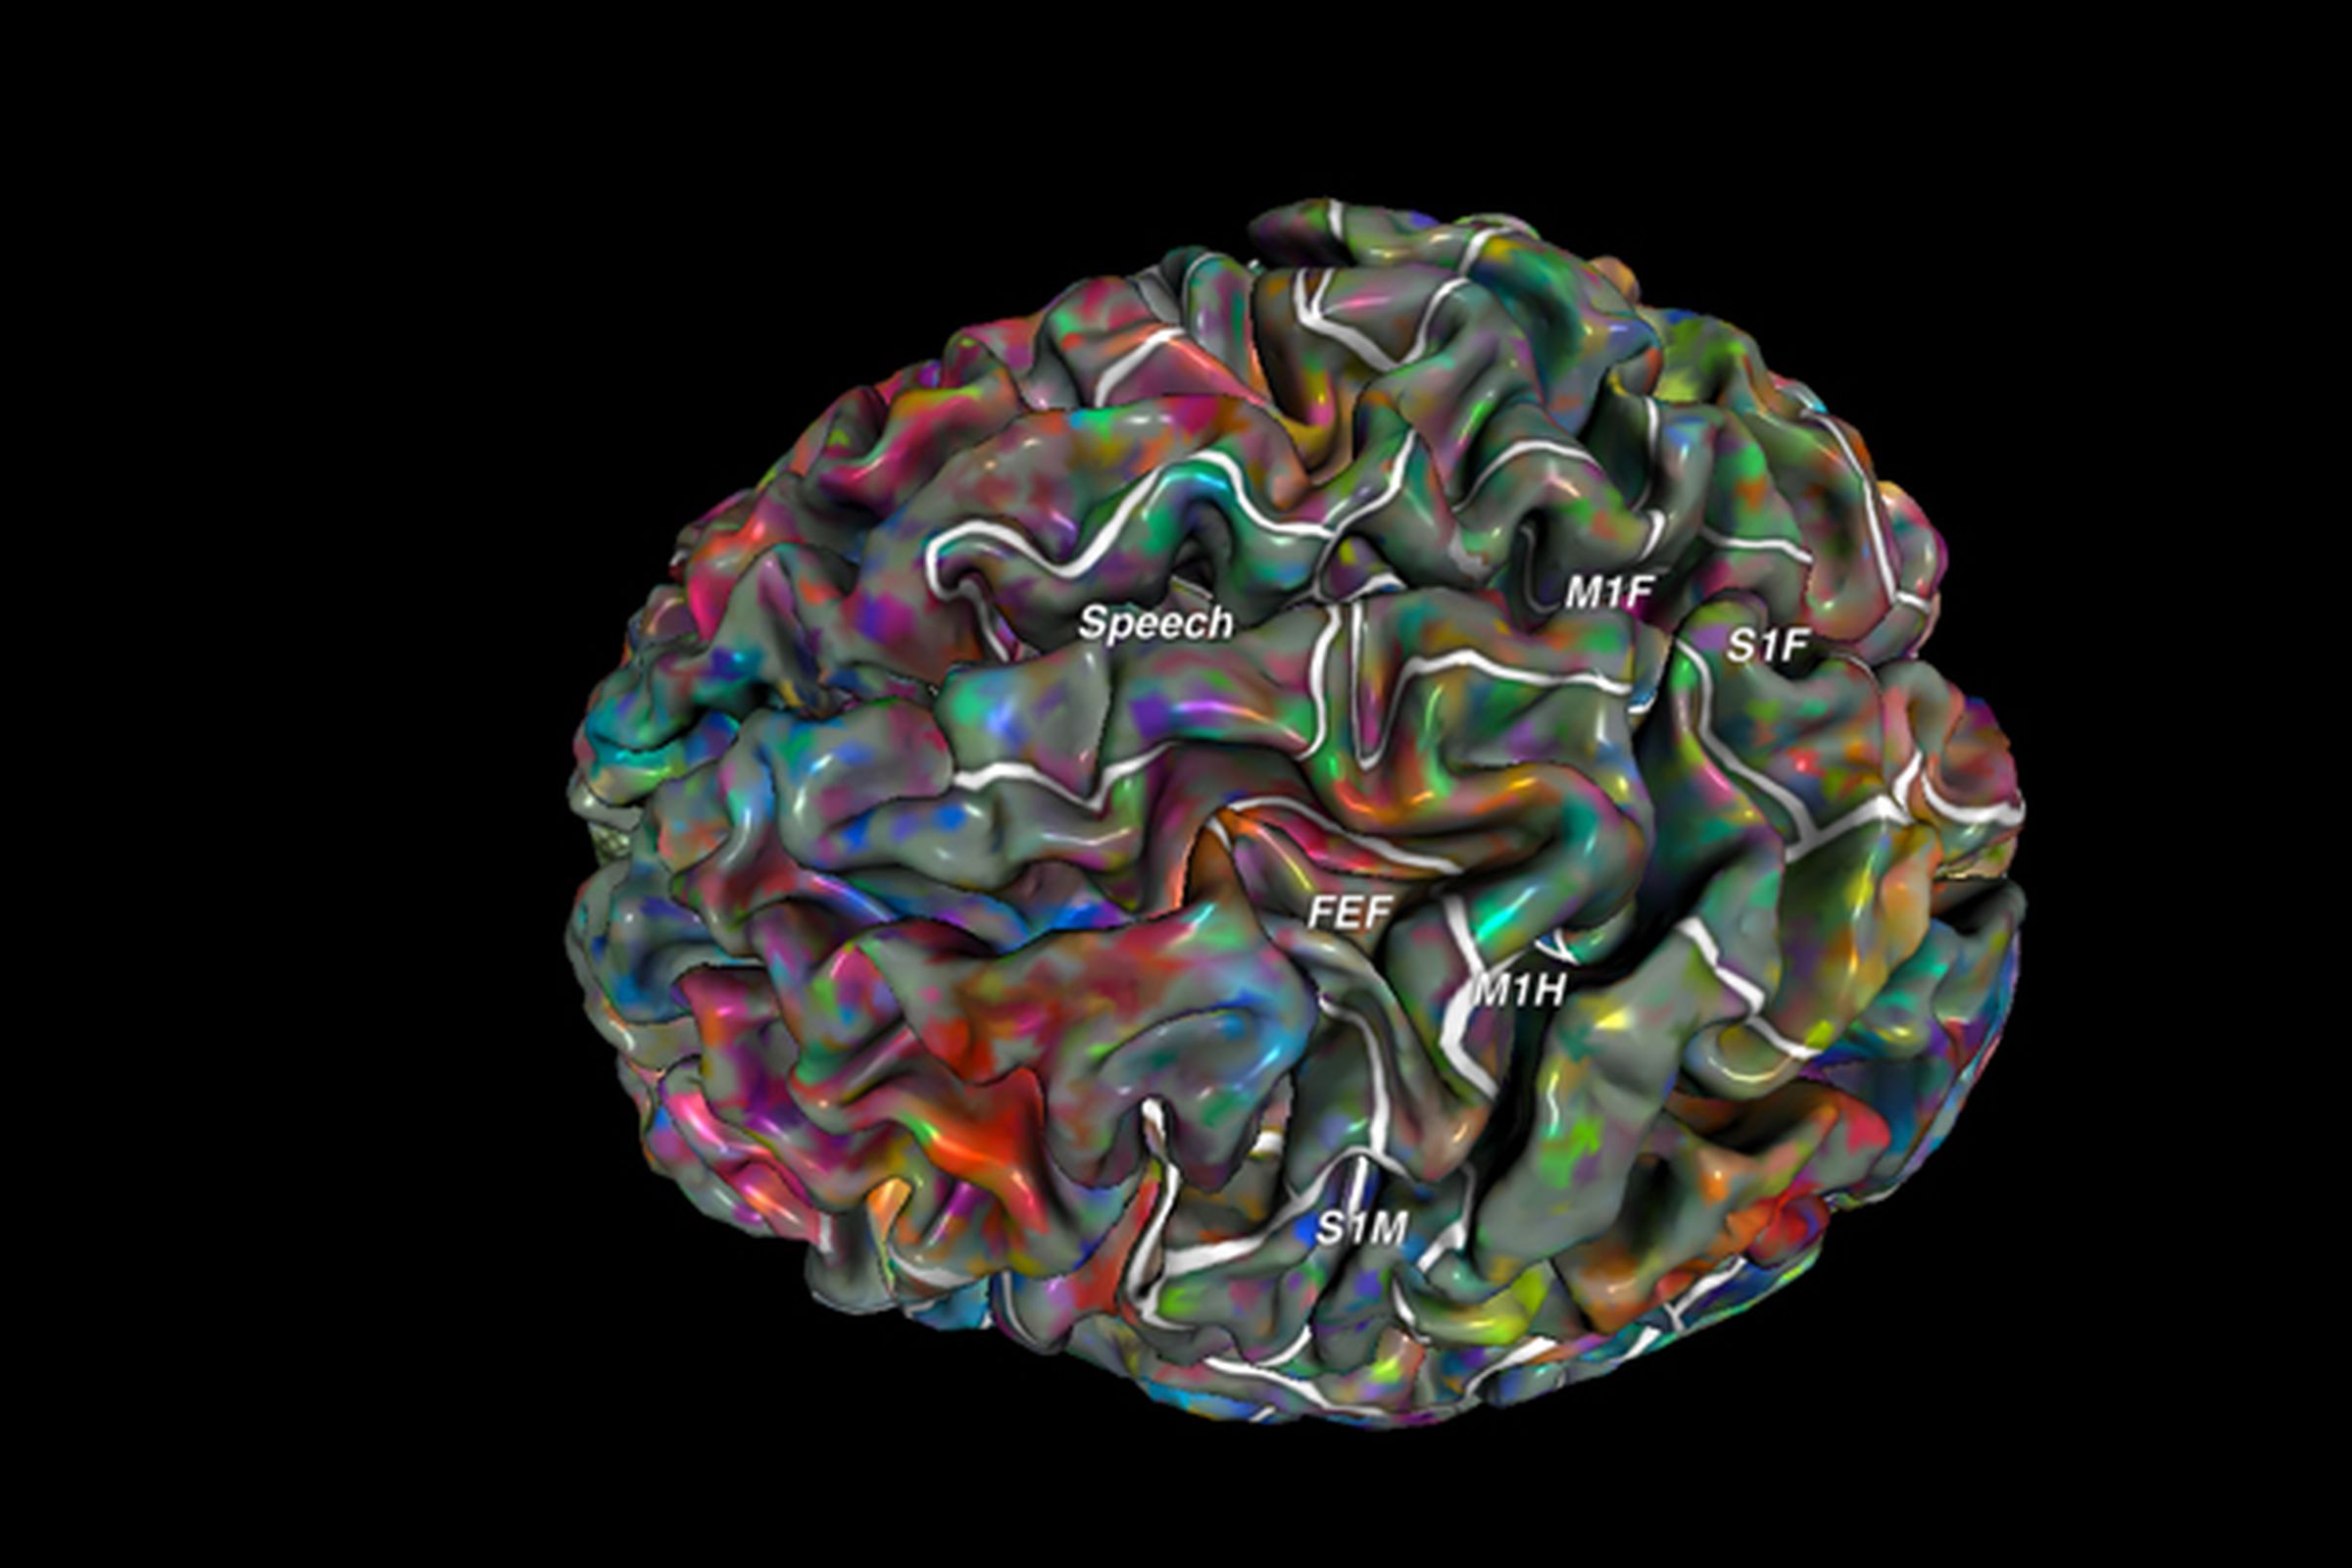 Berkeley brain semantic mapping tool